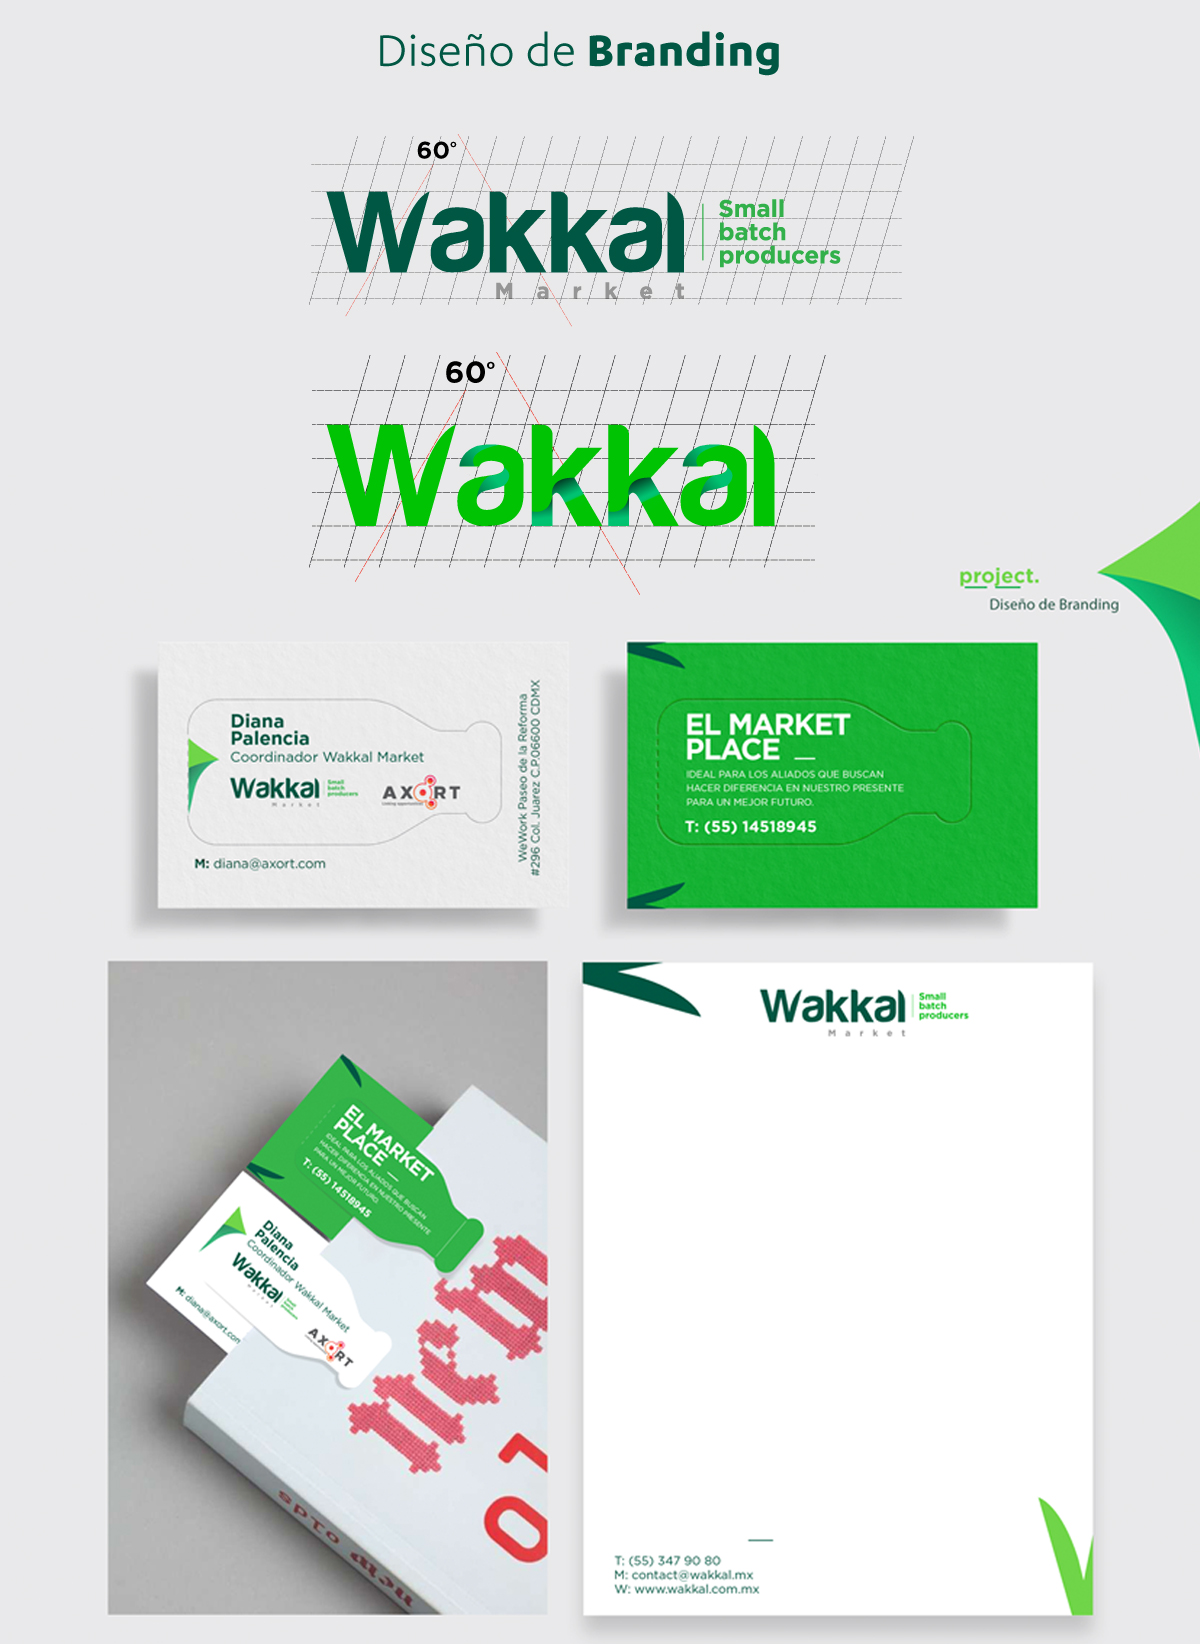 Wakkal market